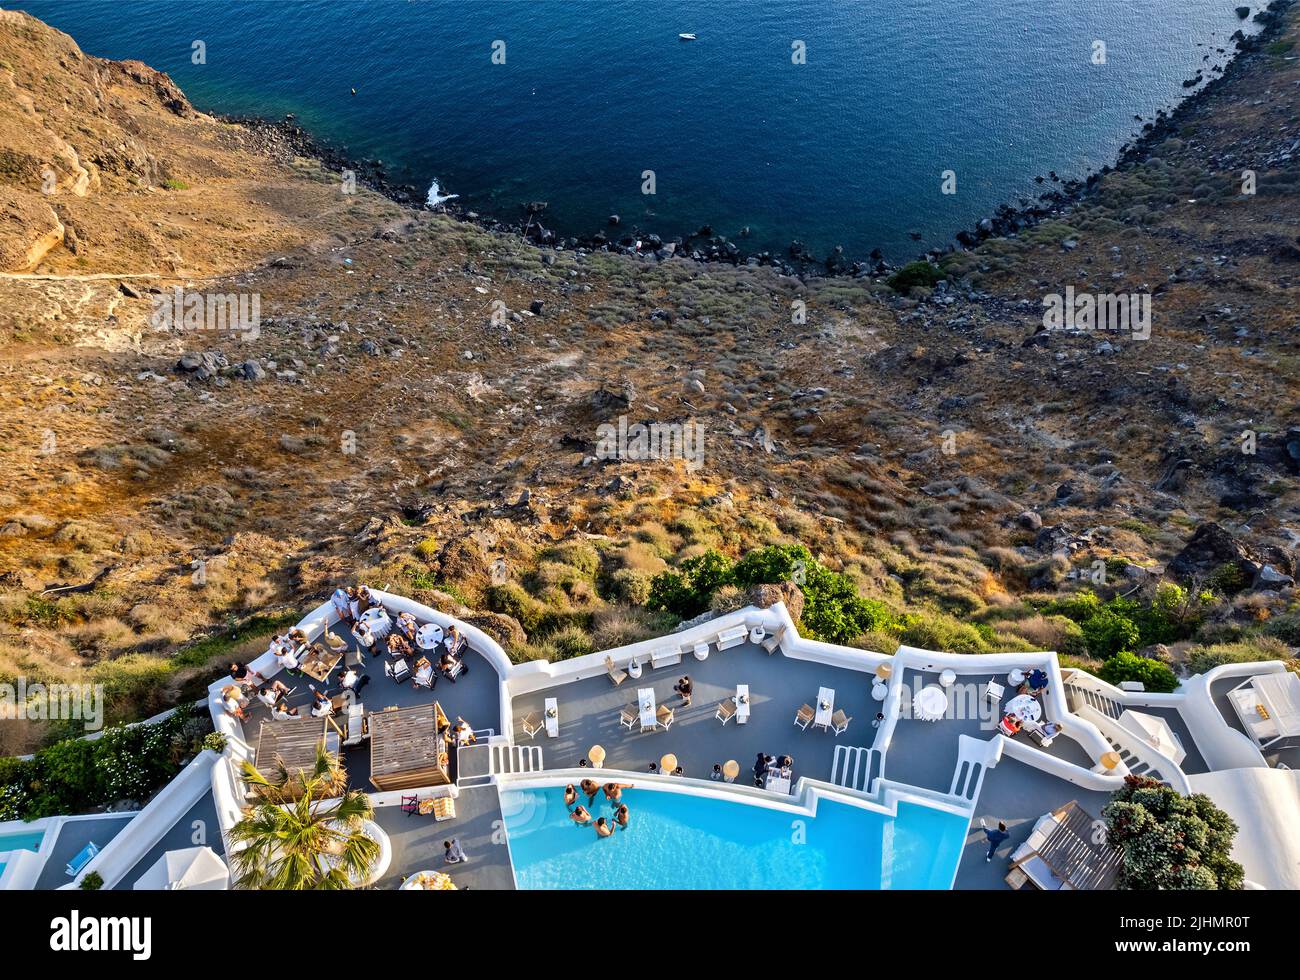 'Katikies Kirini' hotel, 'hangine sopra la caldera, Perivolas, Oia villaggio, Santorini isola, Cicladi, Grecia. Foto Stock